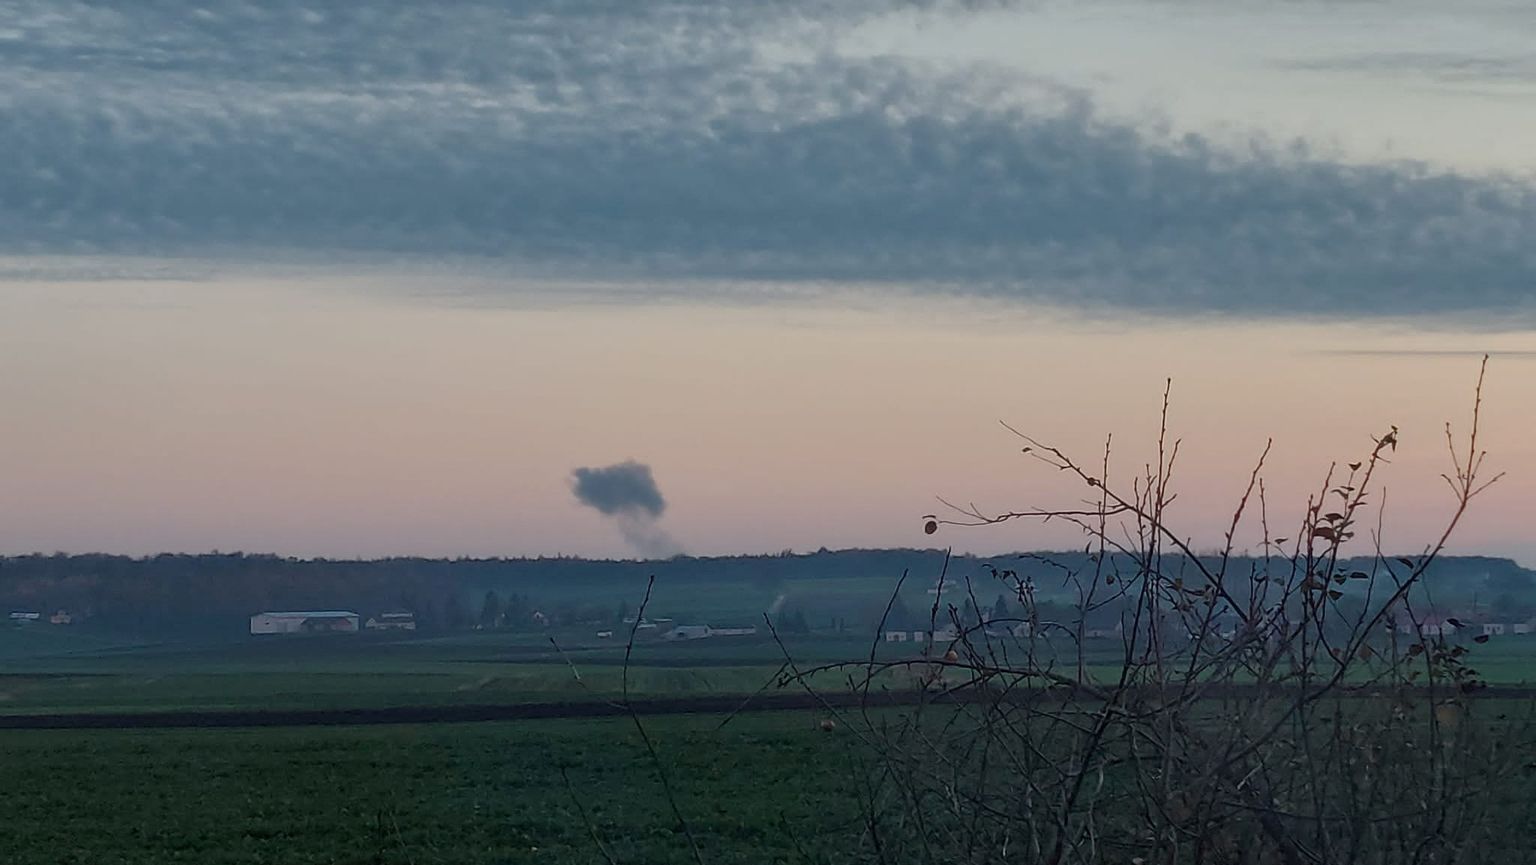 Sellel sotsiaalmeediast saadud pildil on näha kauguses tõusev suits, mille on põhjustanud kaks raketiplahvatust Poolas Ukraina piiri lähedal Nowosiolkis 15. novembril 2022.